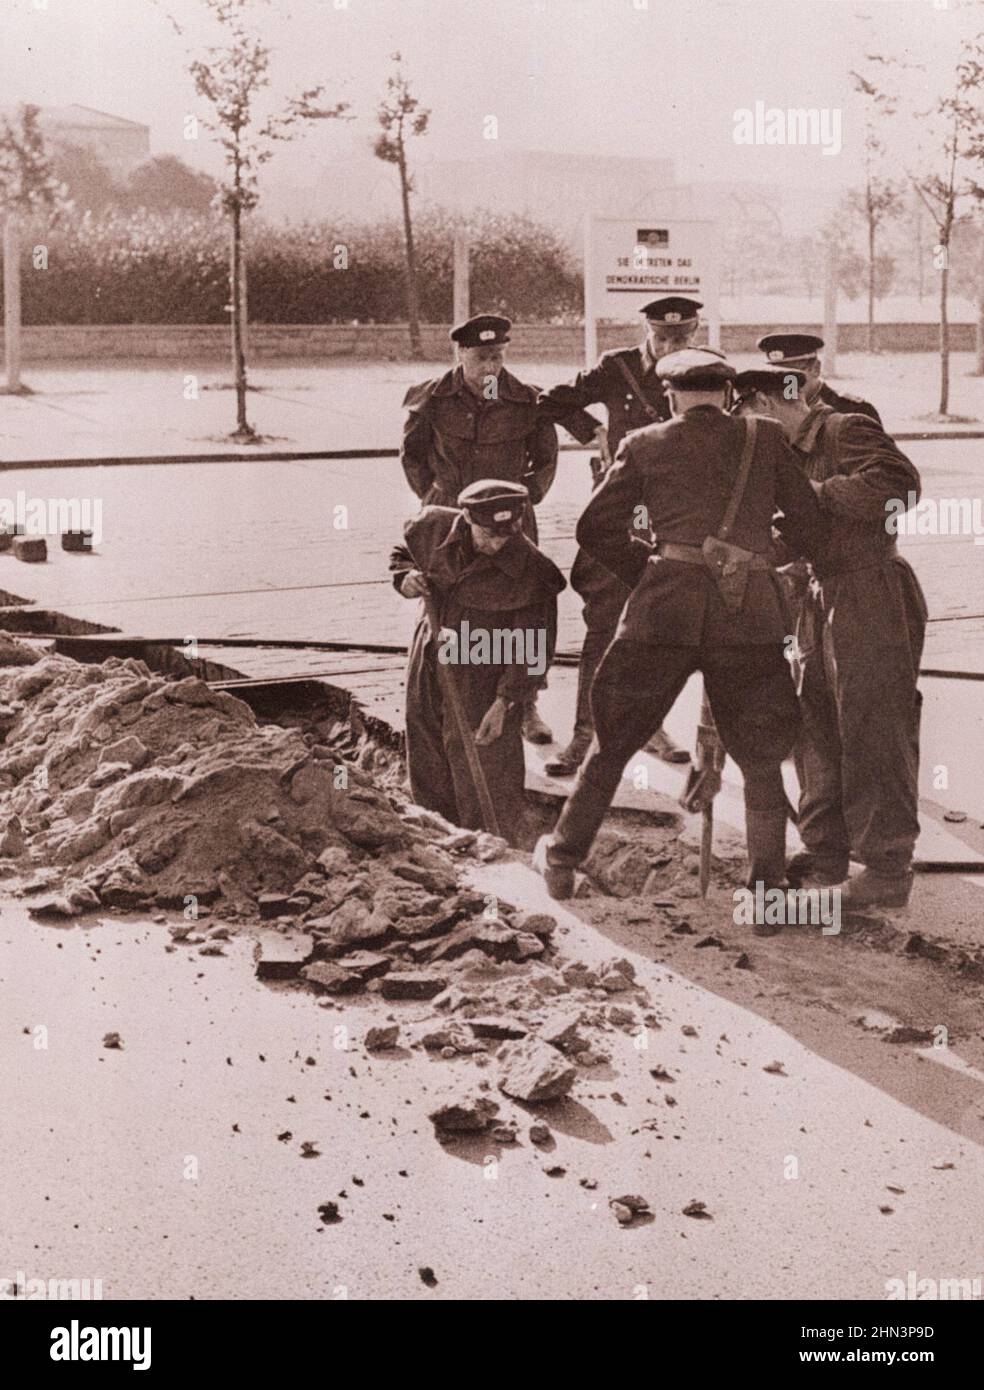 Vintage-Foto der Berliner Krise von 1961: Mauerbau die DDR-Polizei zerreißt am Potsdamer Platz den Bürgersteig, um einen permanenten Straßenblock zu bauen. Kommu Stockfoto